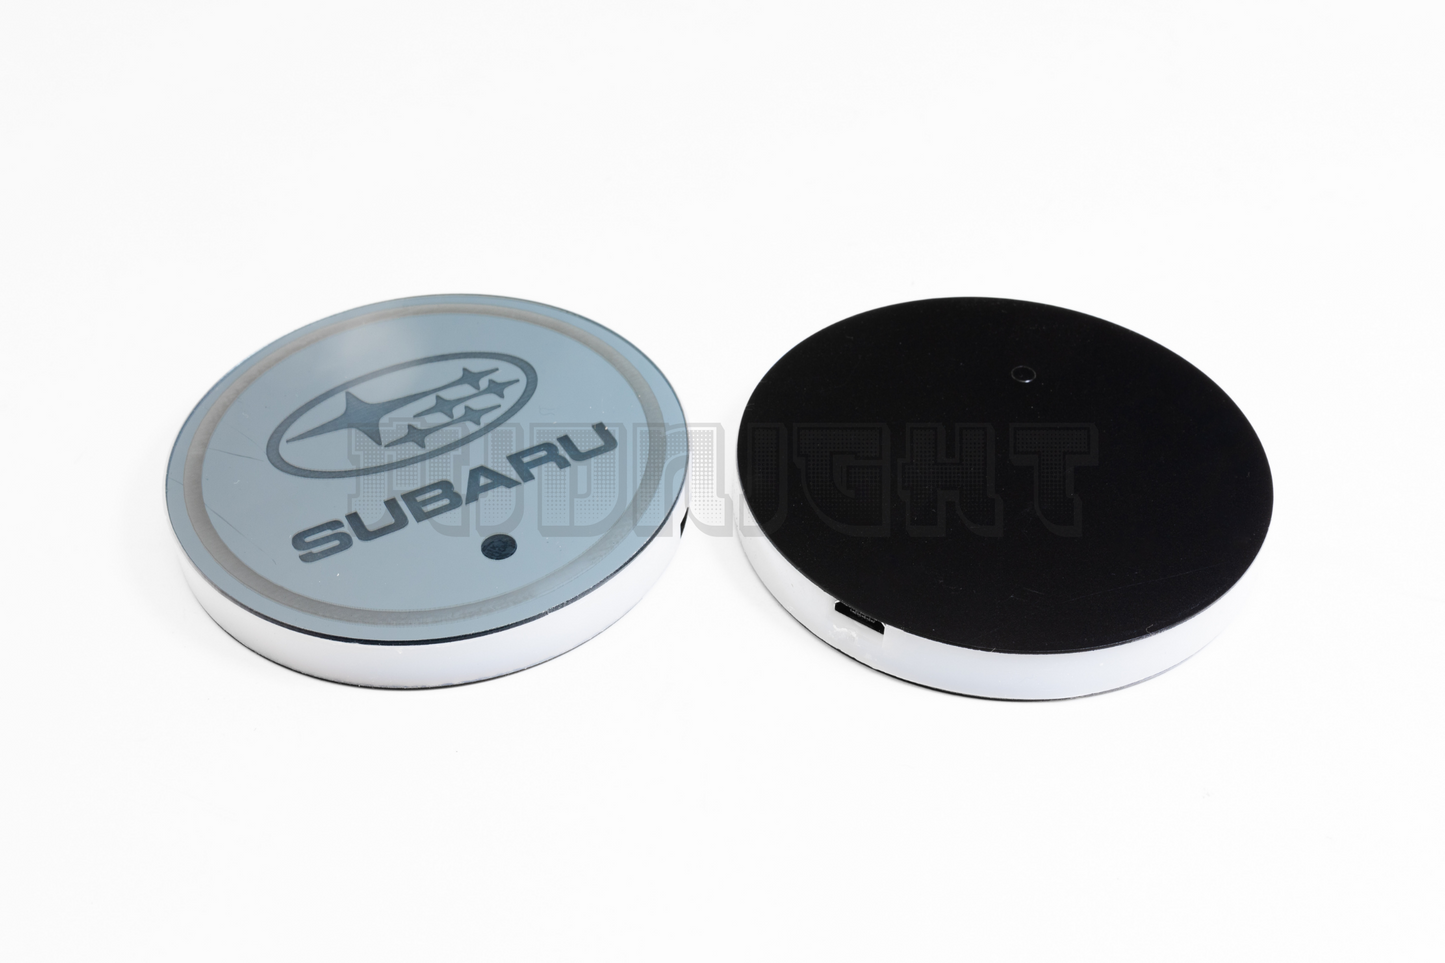 Subaru LED Cup Holder Coaster